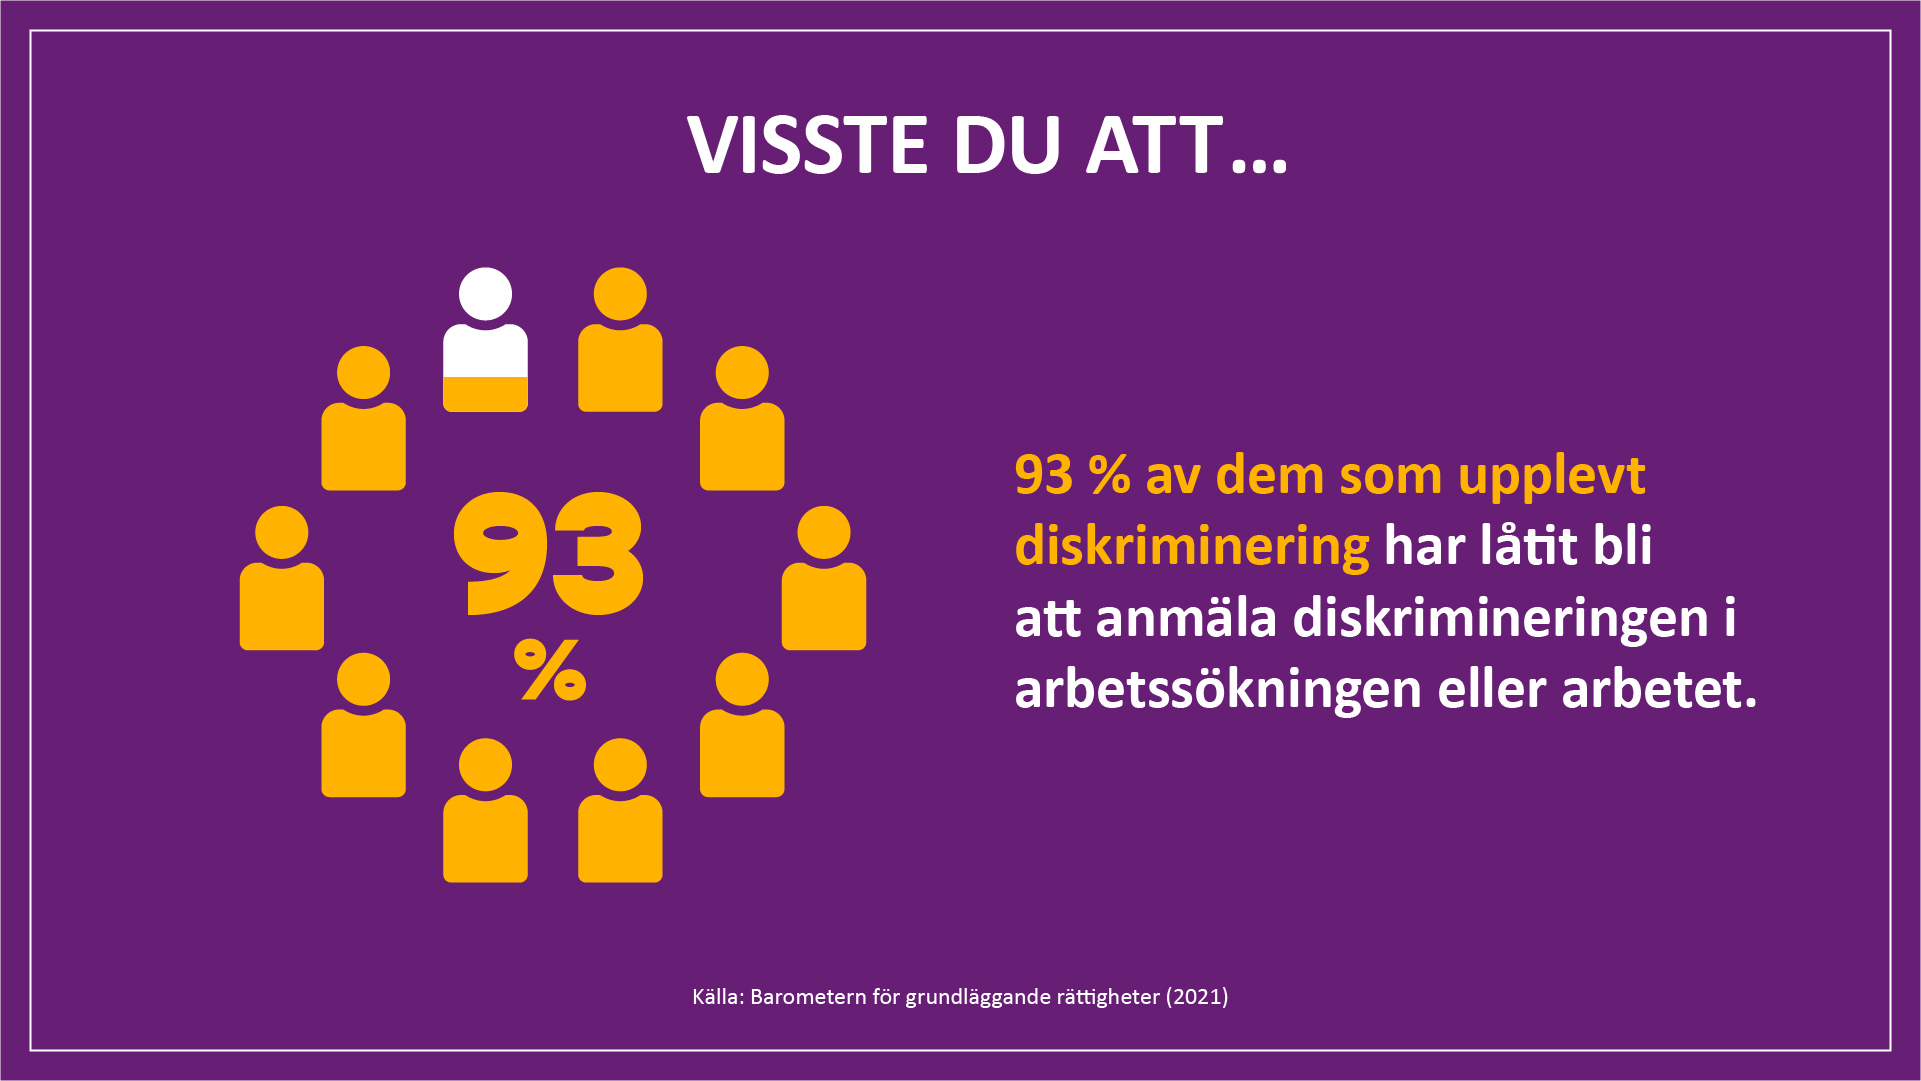 Visste du att 93 % av dem som upplevt diskriminering har låtit bli att anmäla diskrimineringen i arbetssökningen eller arbetet. Källa: Barometern för grundläggande rättigheter (2021).